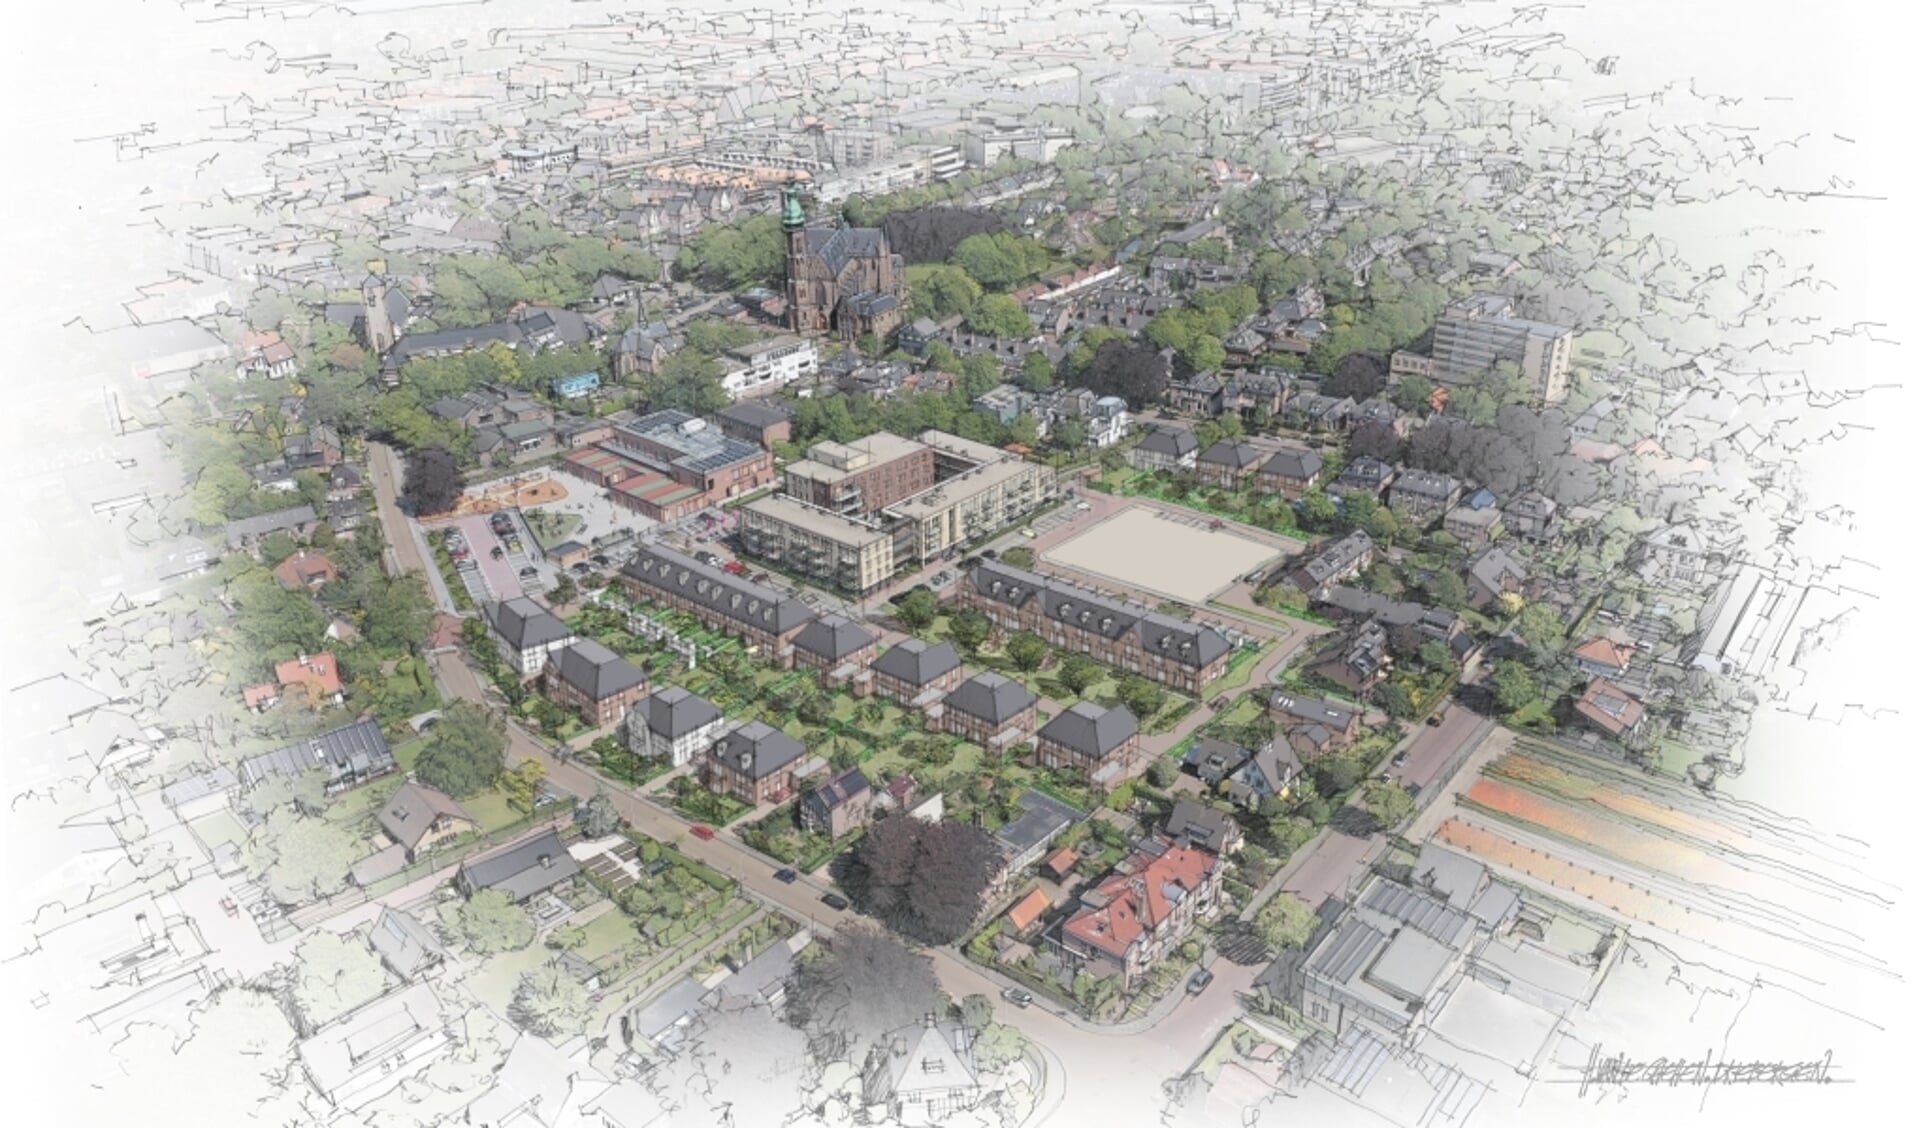 Impressie van de nieuwe wijk in aanbouw, Nieuw Trompenburg.